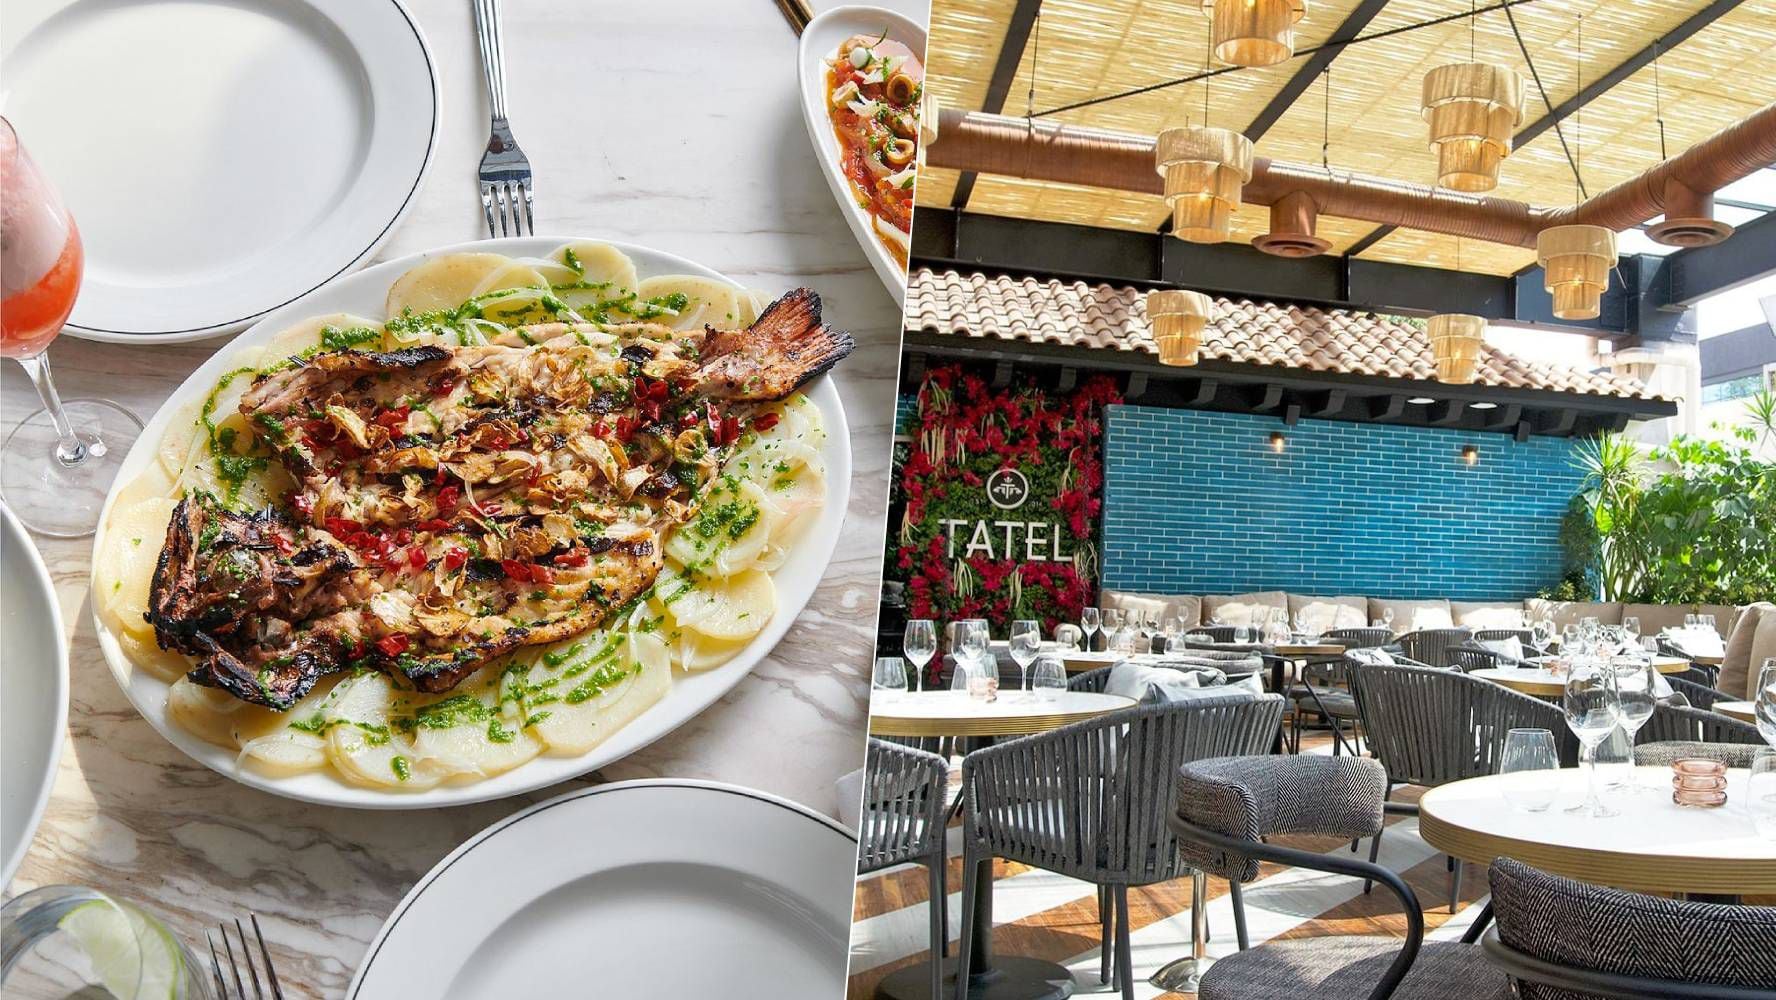 Tatel sirve comida con inspiración mediterránea y ha tropicalizado algunos platillos de su carta para el gusto de los comensales. (Foto: Instagram / @tatel.mexicocity).